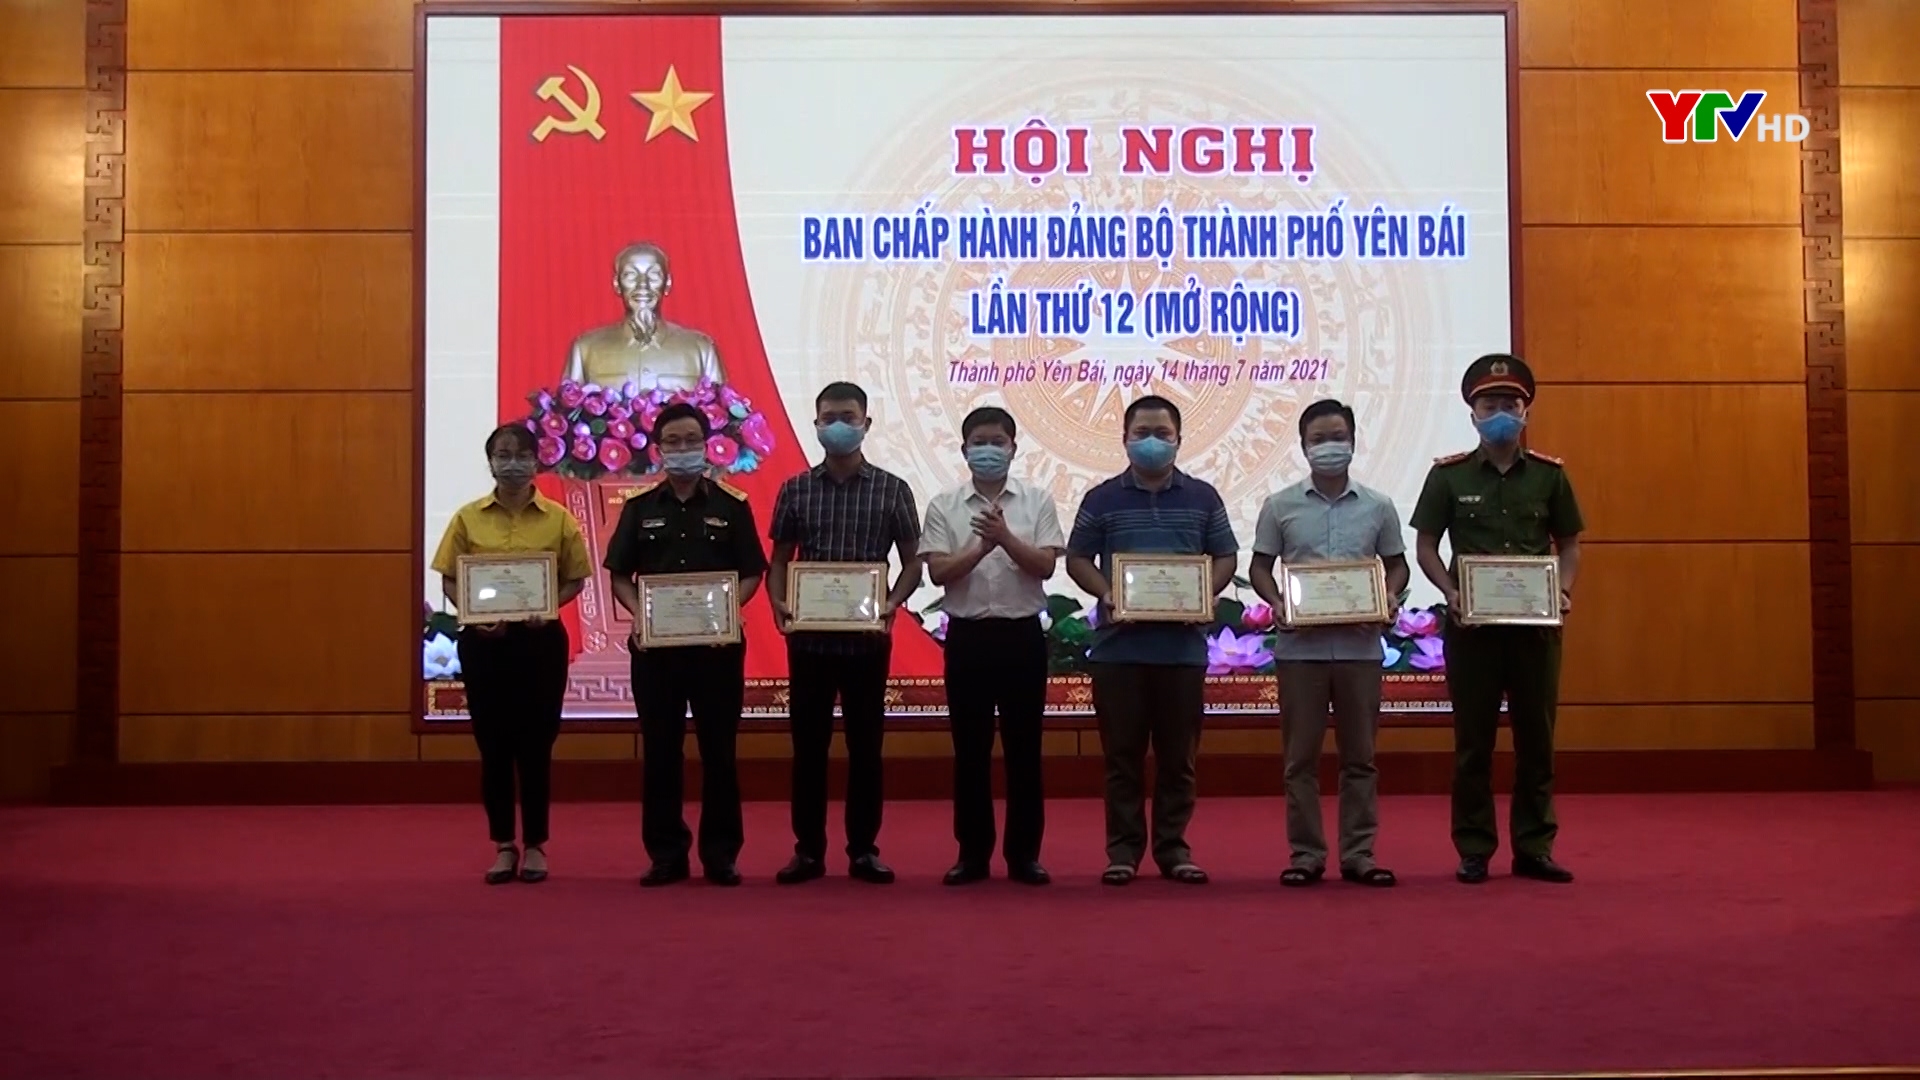 Hội nghị BCH Đảng bộ thành phố Yên Bái lần thứ 12  (mở rộng)